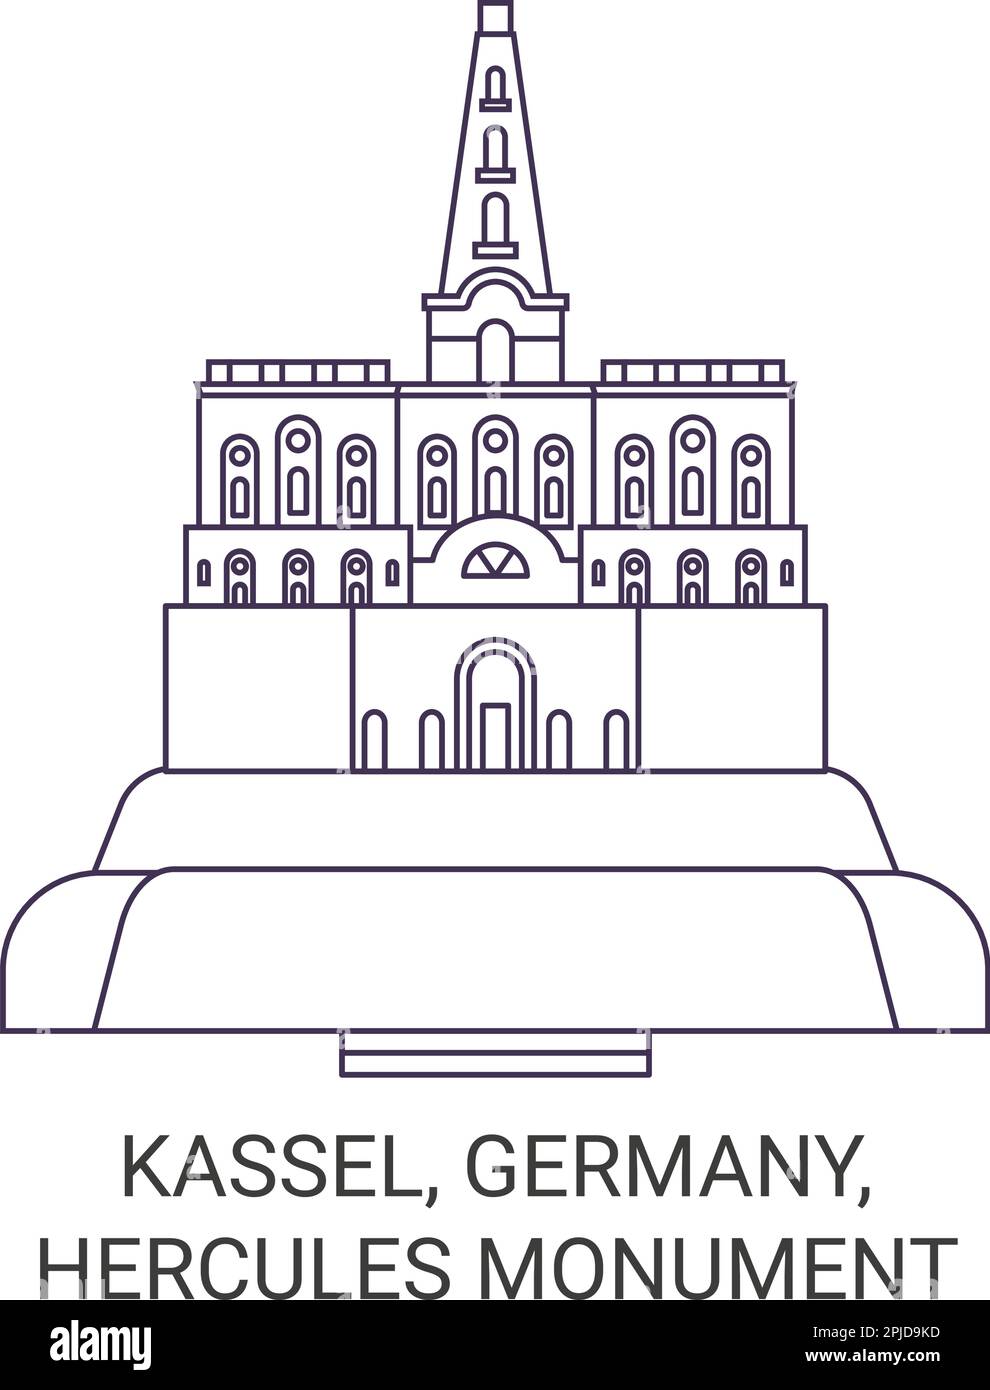 Germany, Kassel, Hercules Monument travel landmark vector illustration Stock Vector